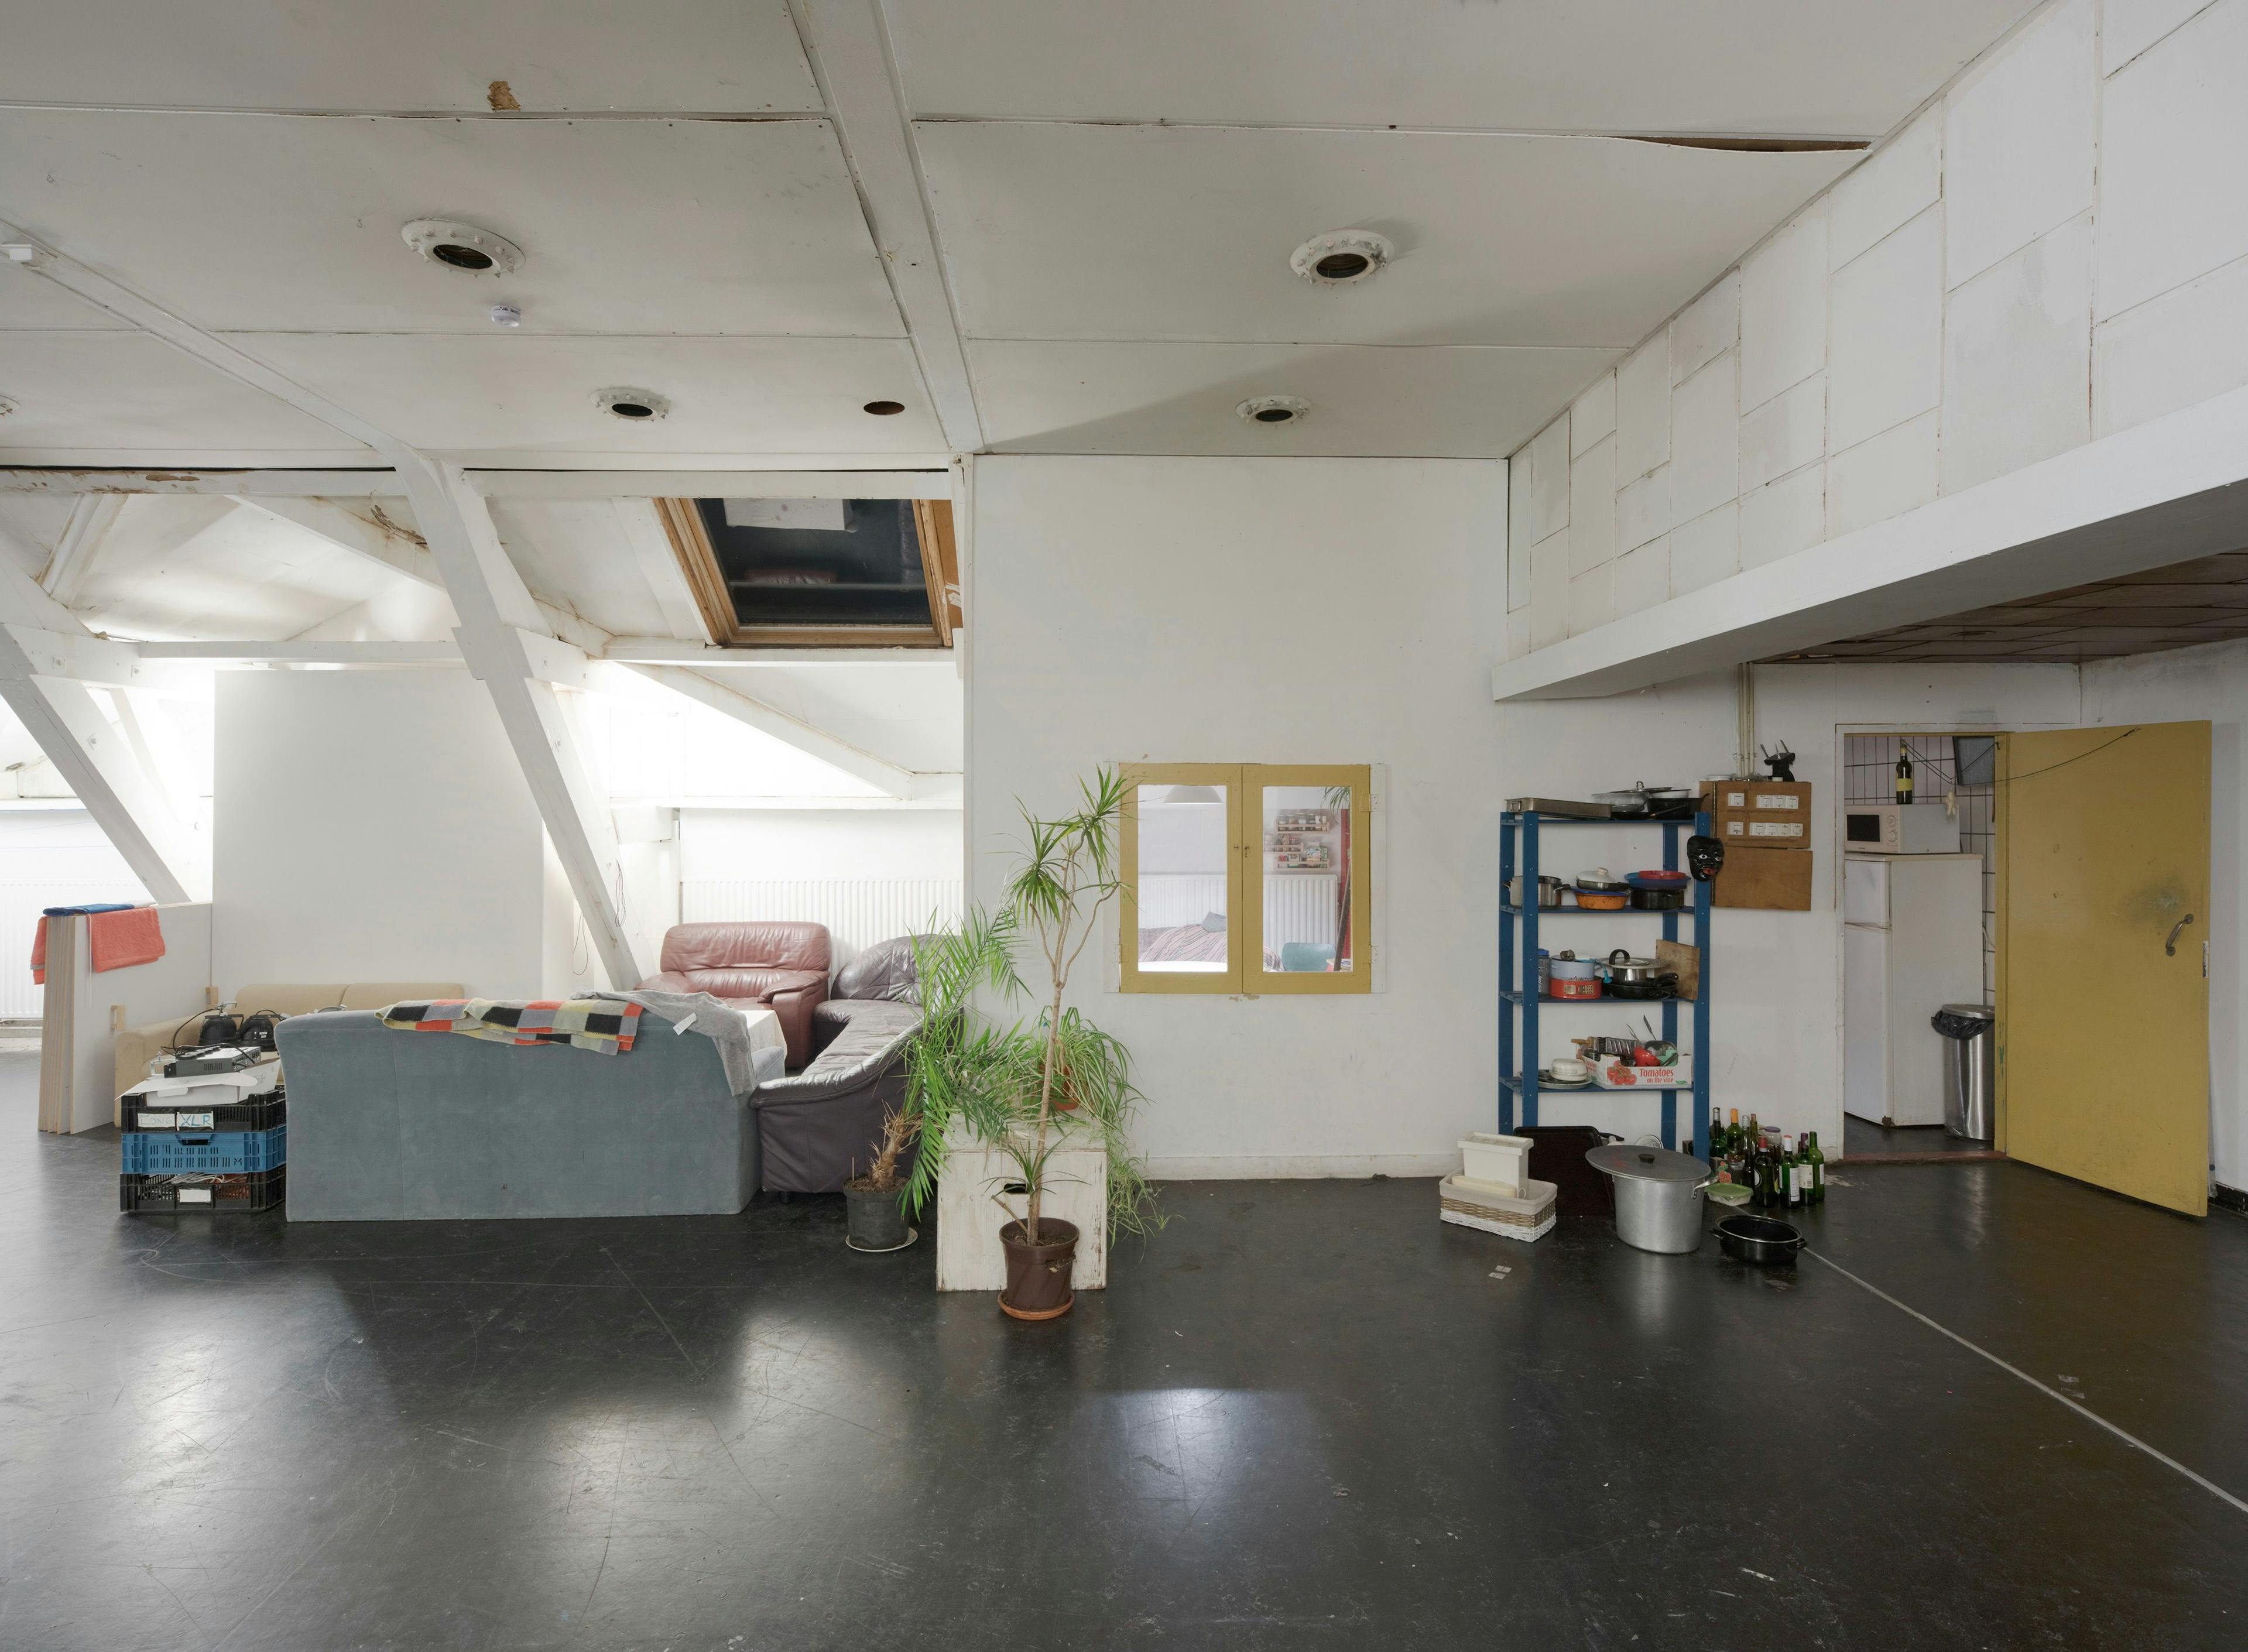  Poortgebouw. Third floor - Attic. Photo by Johannes Schwartz 